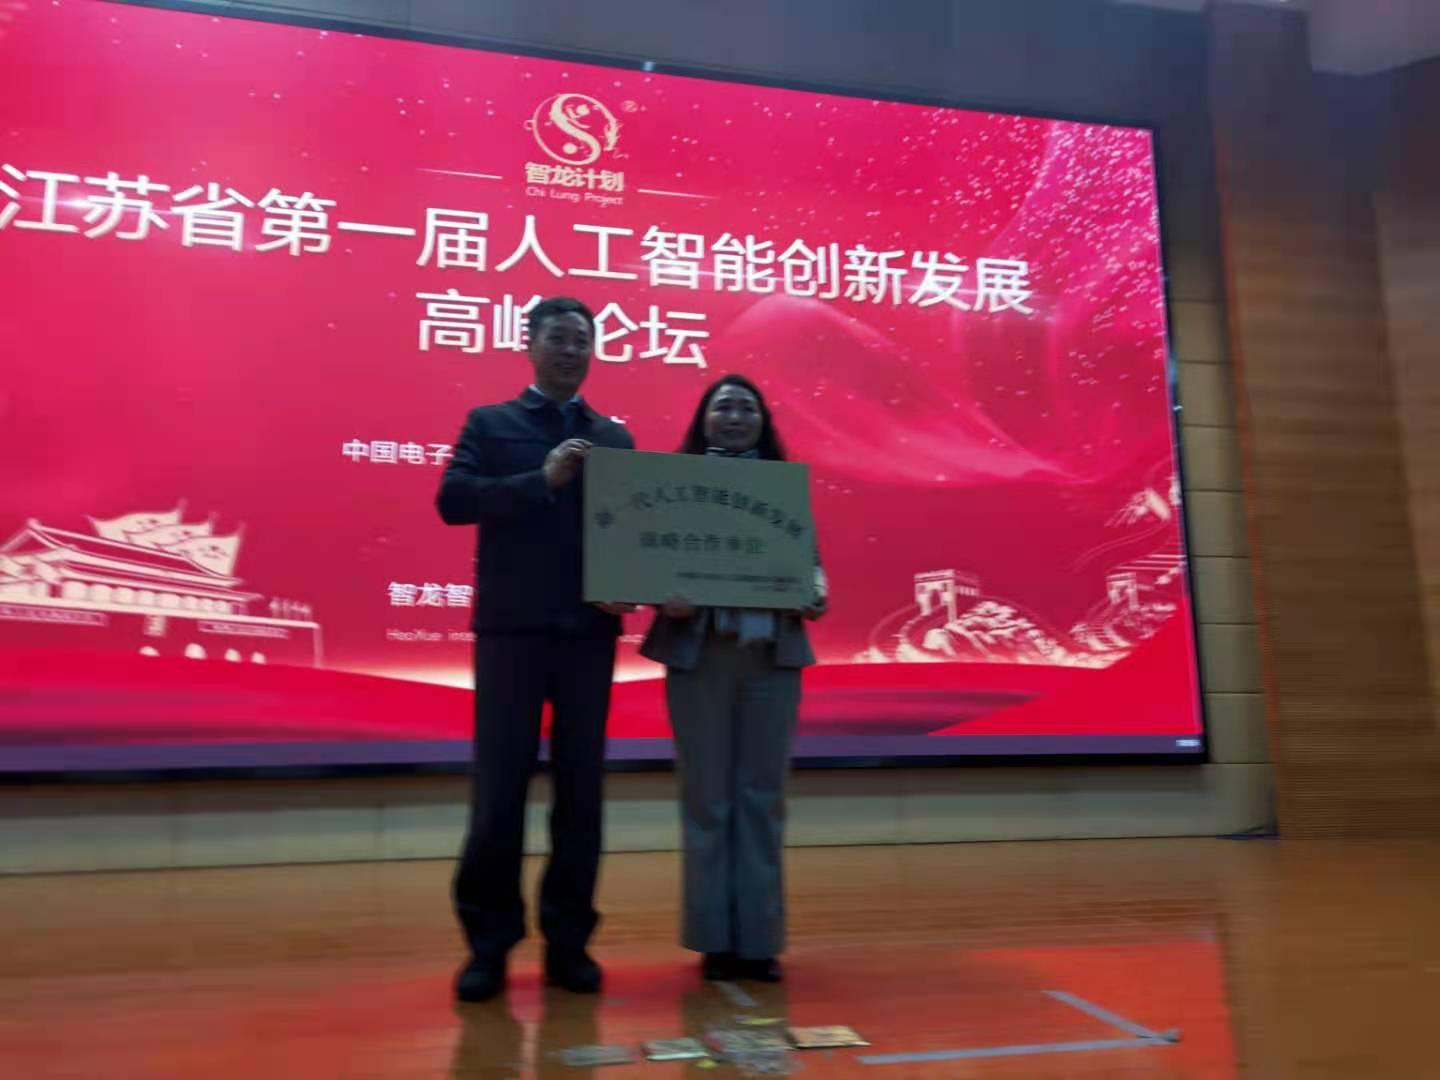 江苏省首届人工智能创新发展高峰论坛在宁启动